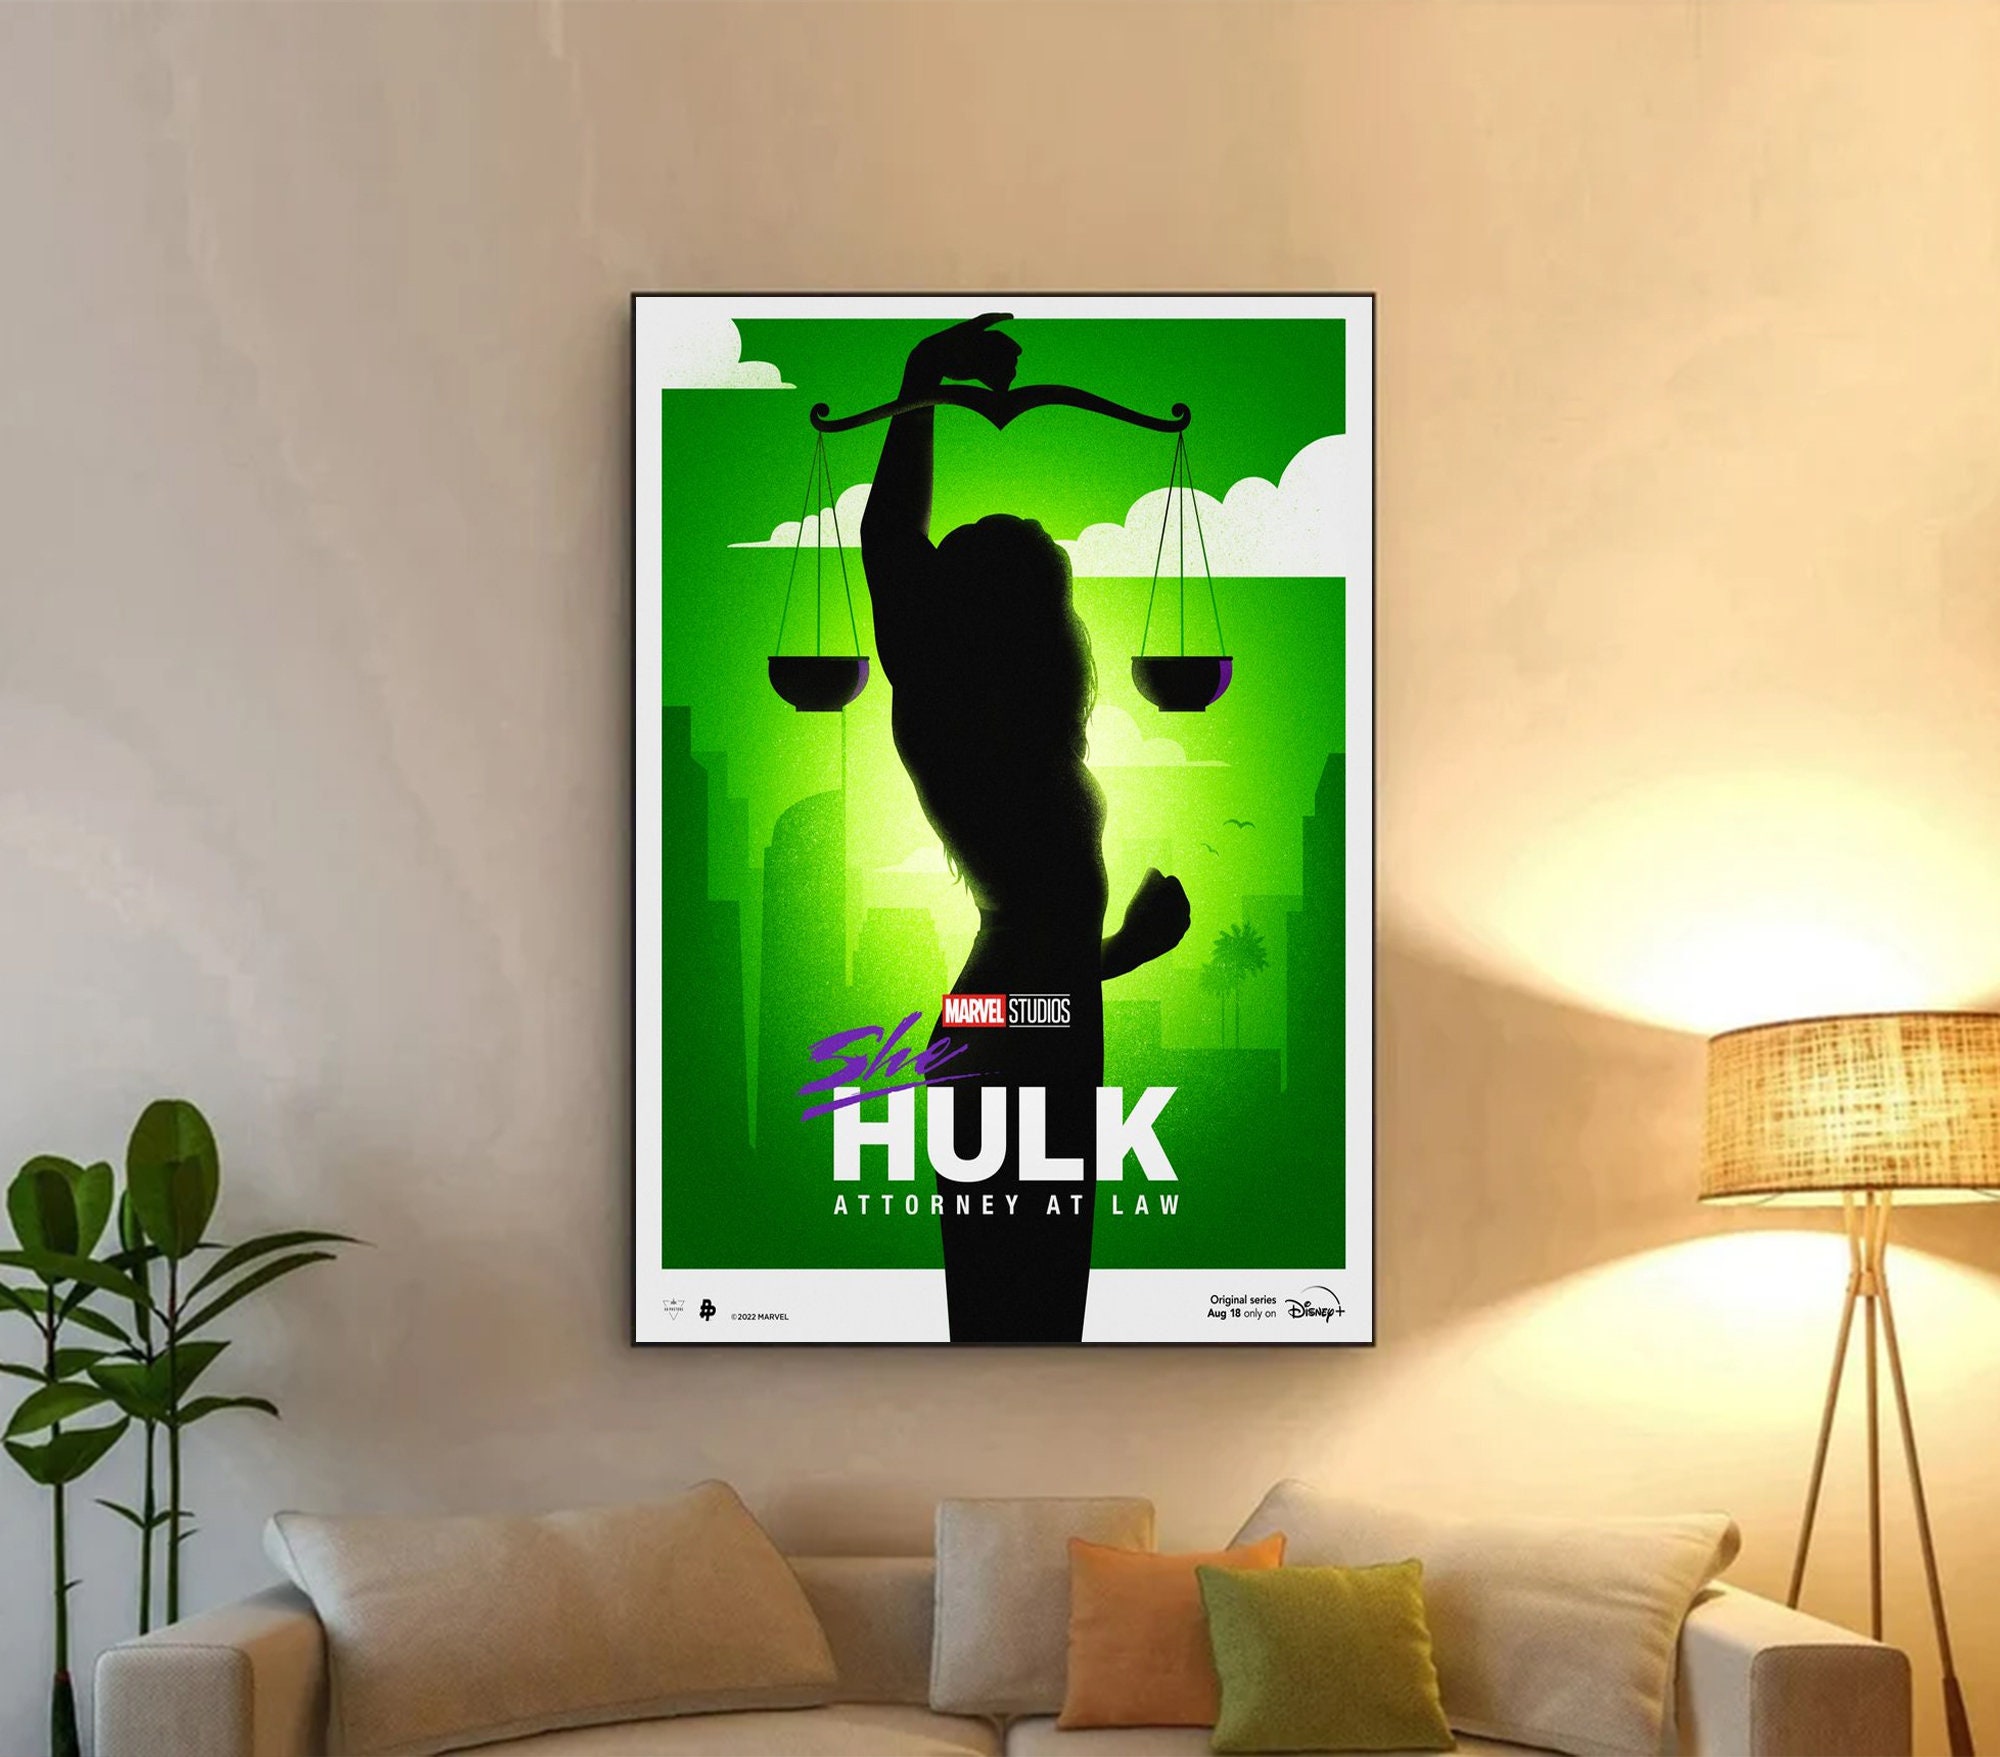 She Hulk 2022 New Marvel Poster, She Hulk Marvel Movie Poster